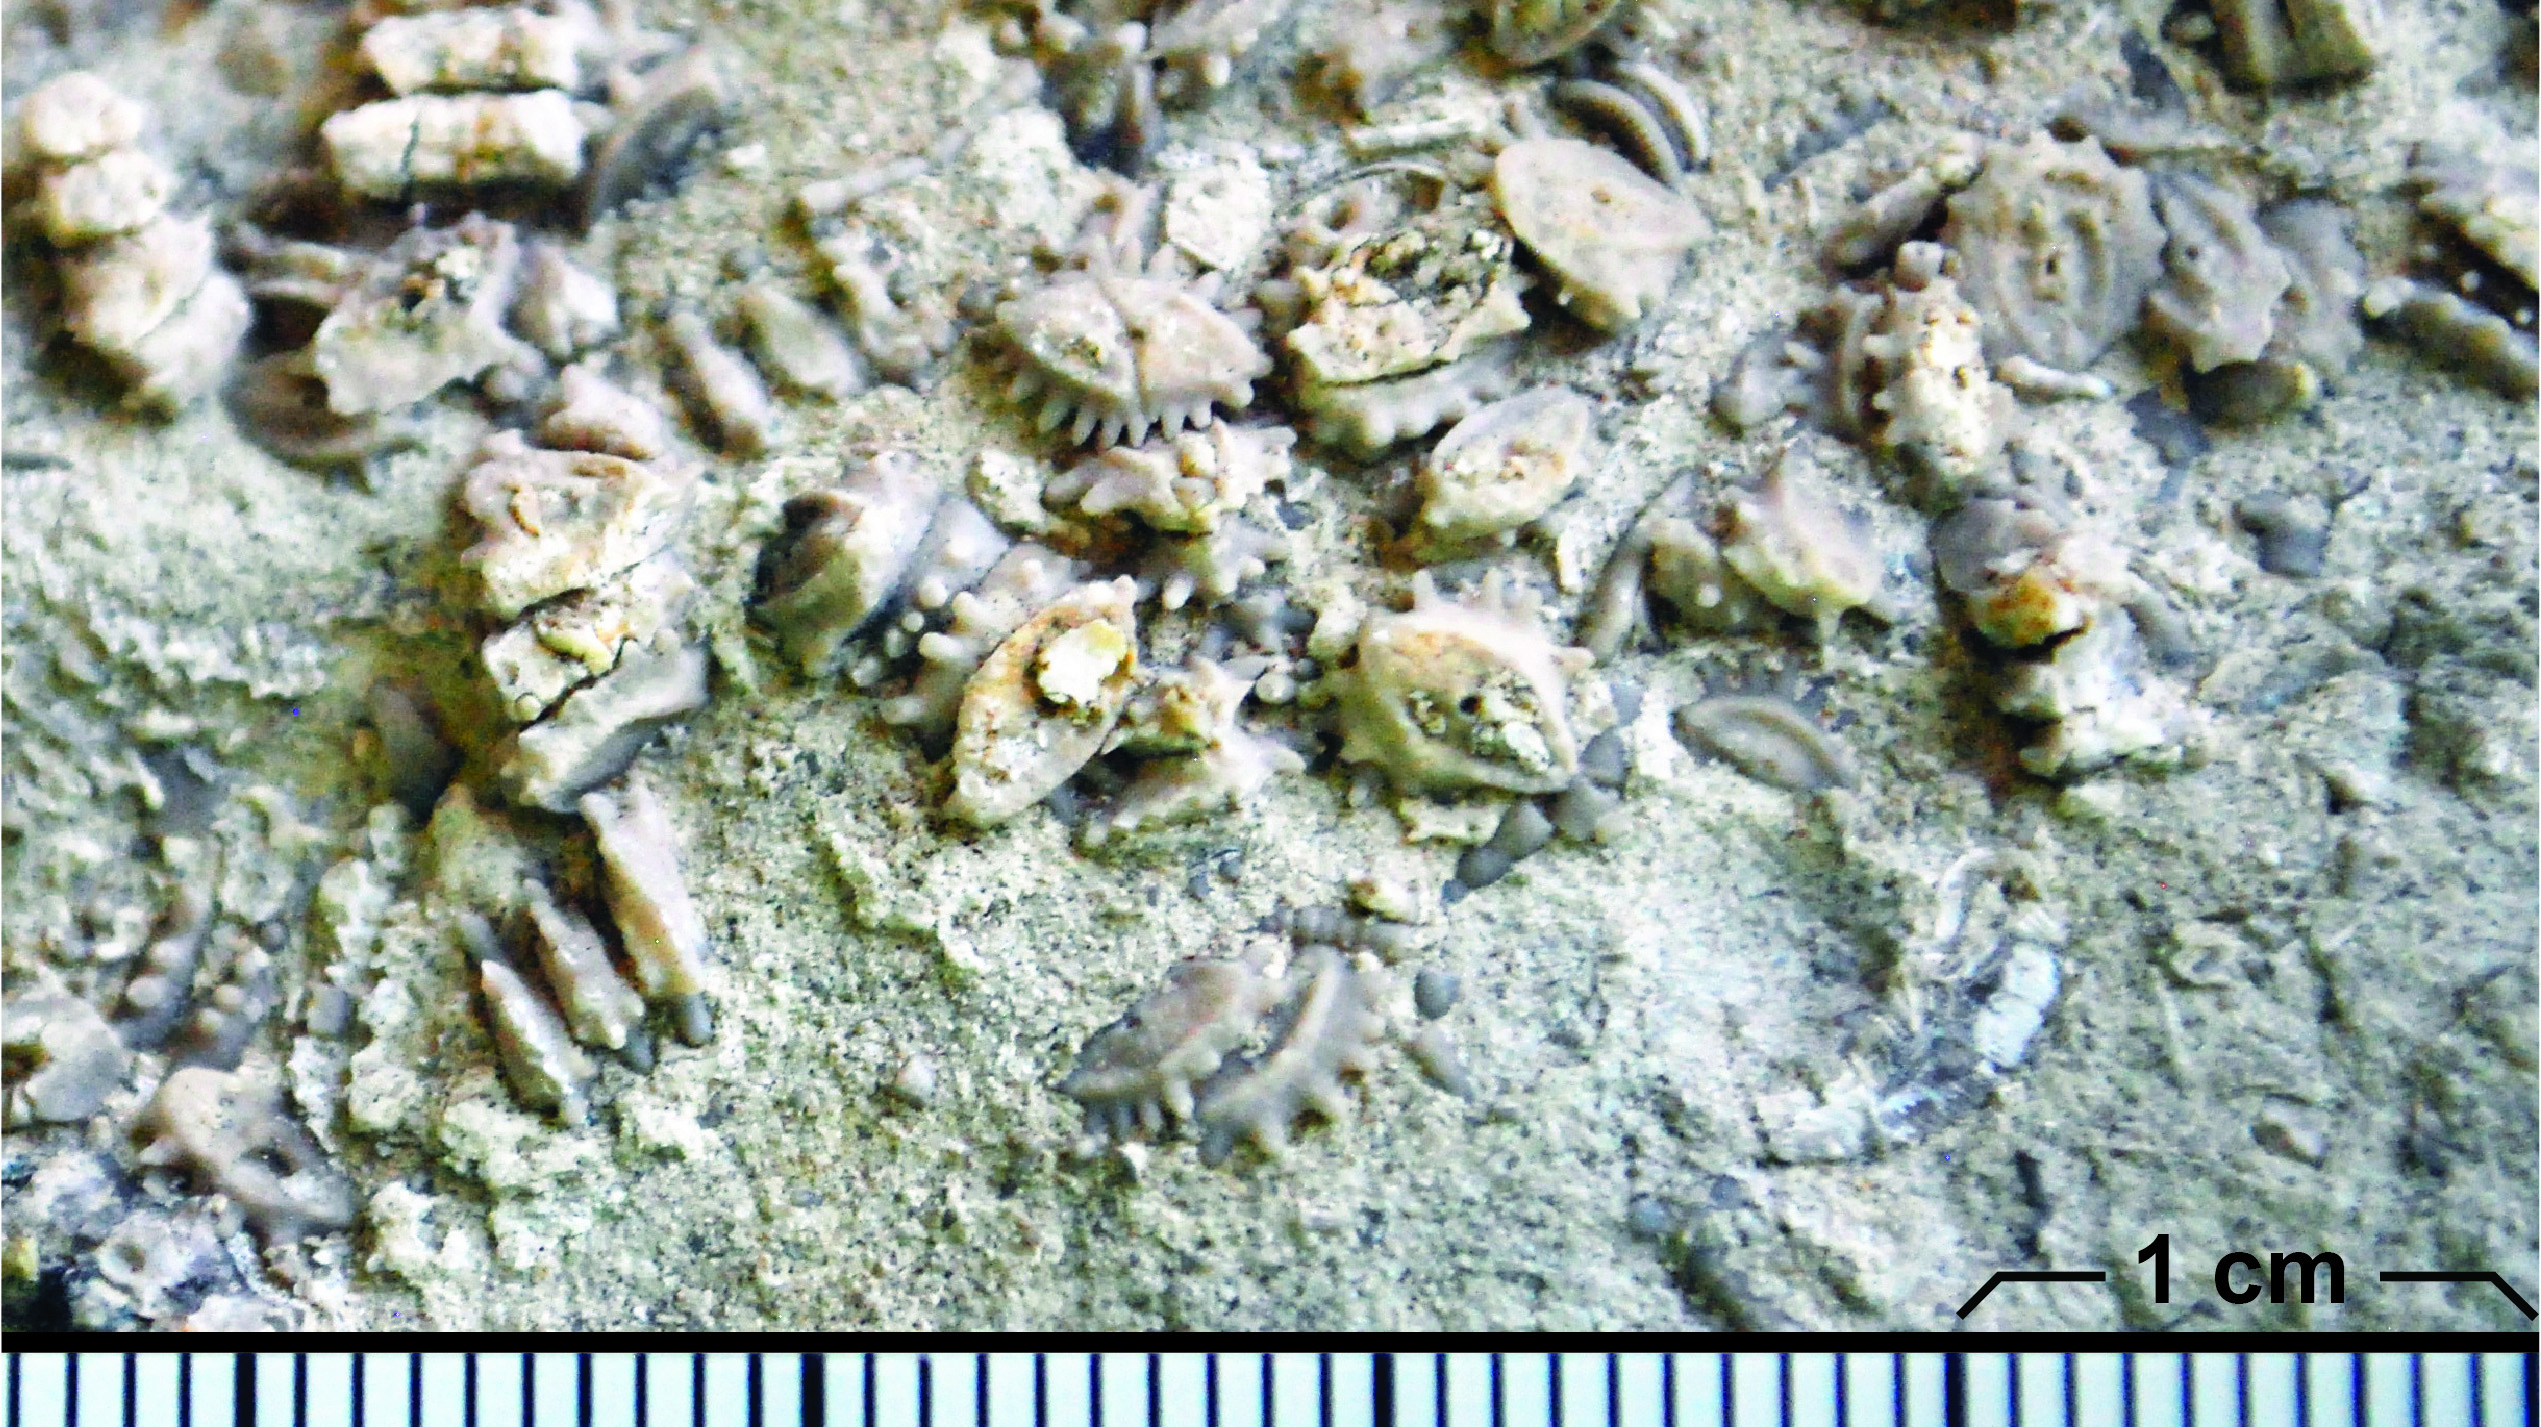 A picture containing invertebrate, rock, arthropod, stone

Description automatically generated